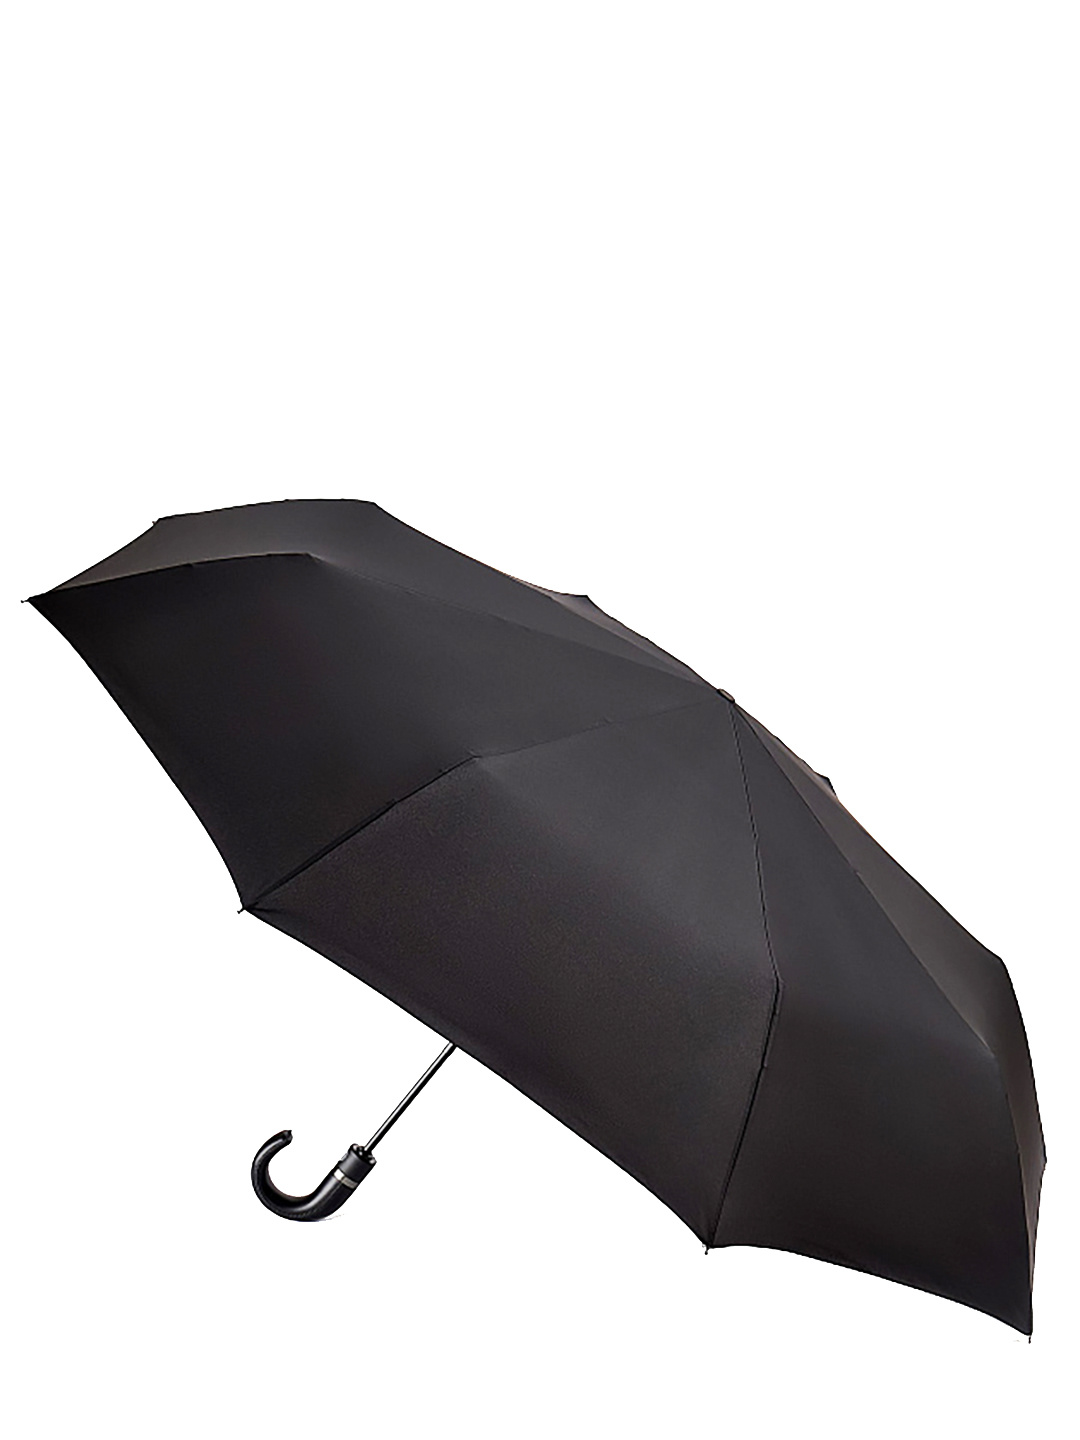 Фото Большой классический мужской зонт-автомат черного цвета Зонты